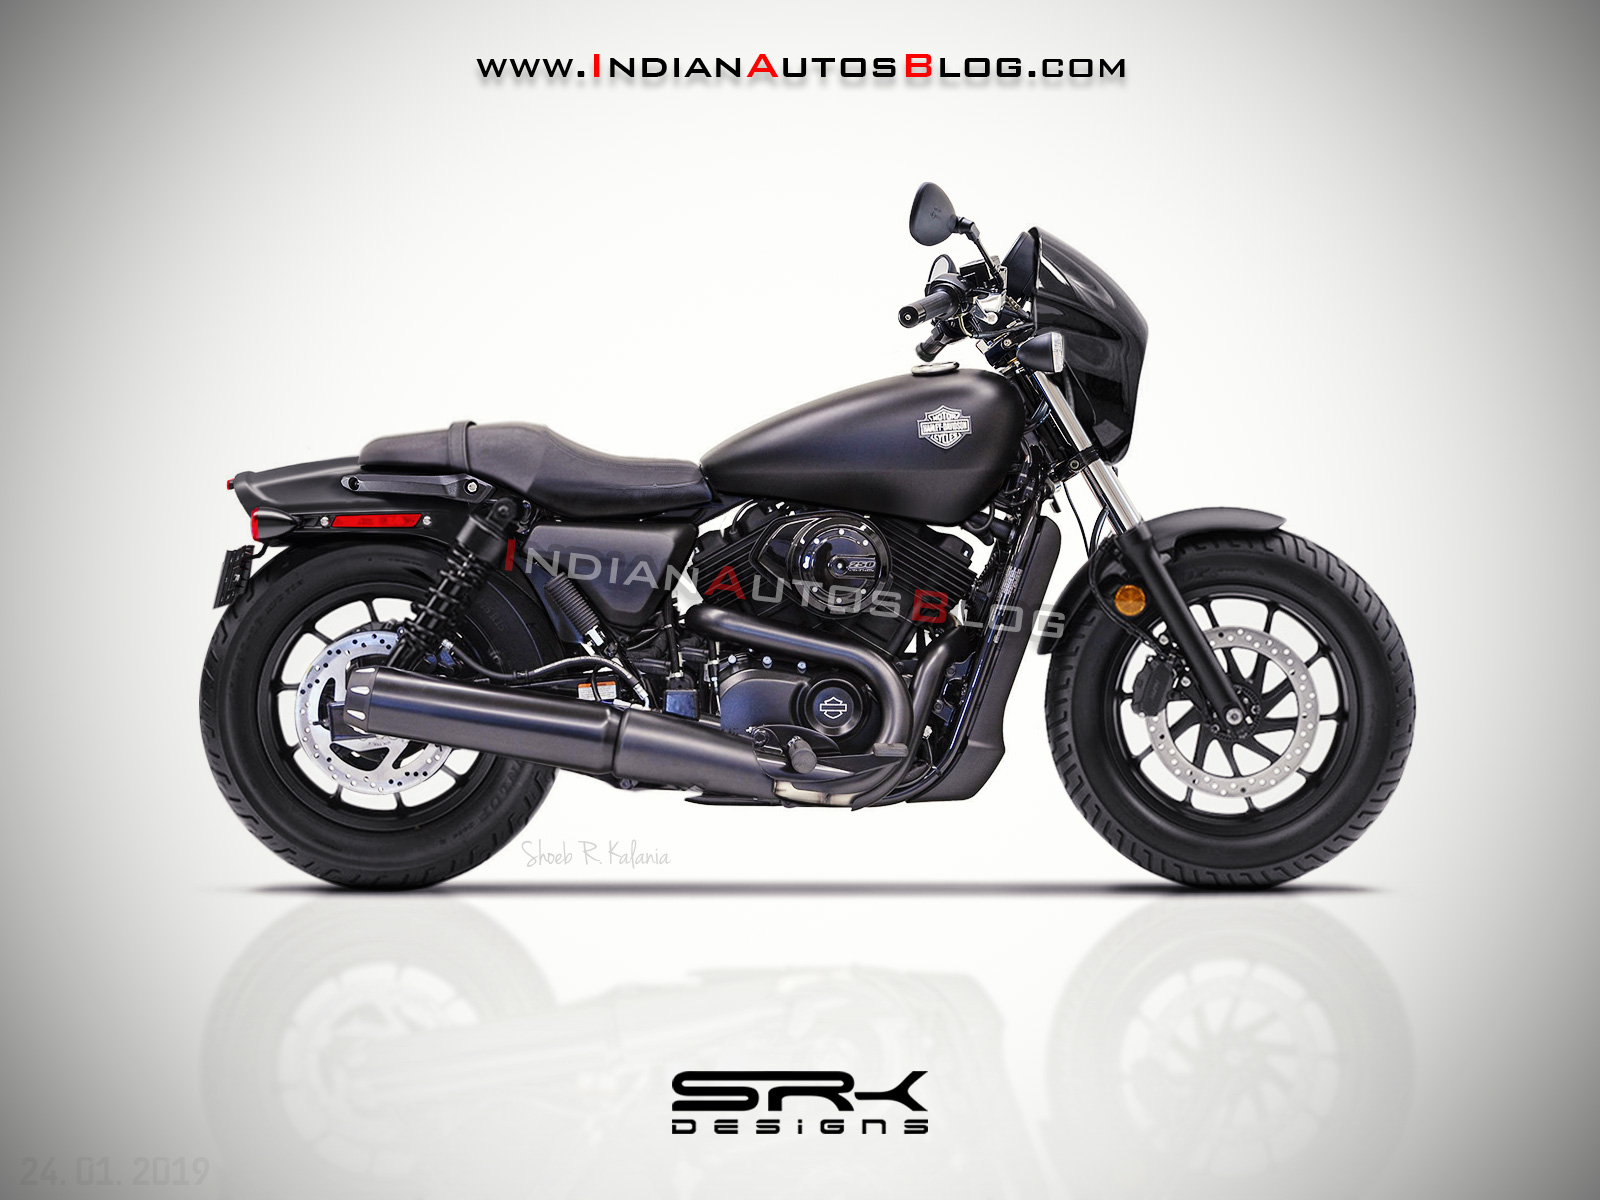 Harley Davidson Bike 2020 Price In India Promotion Off56